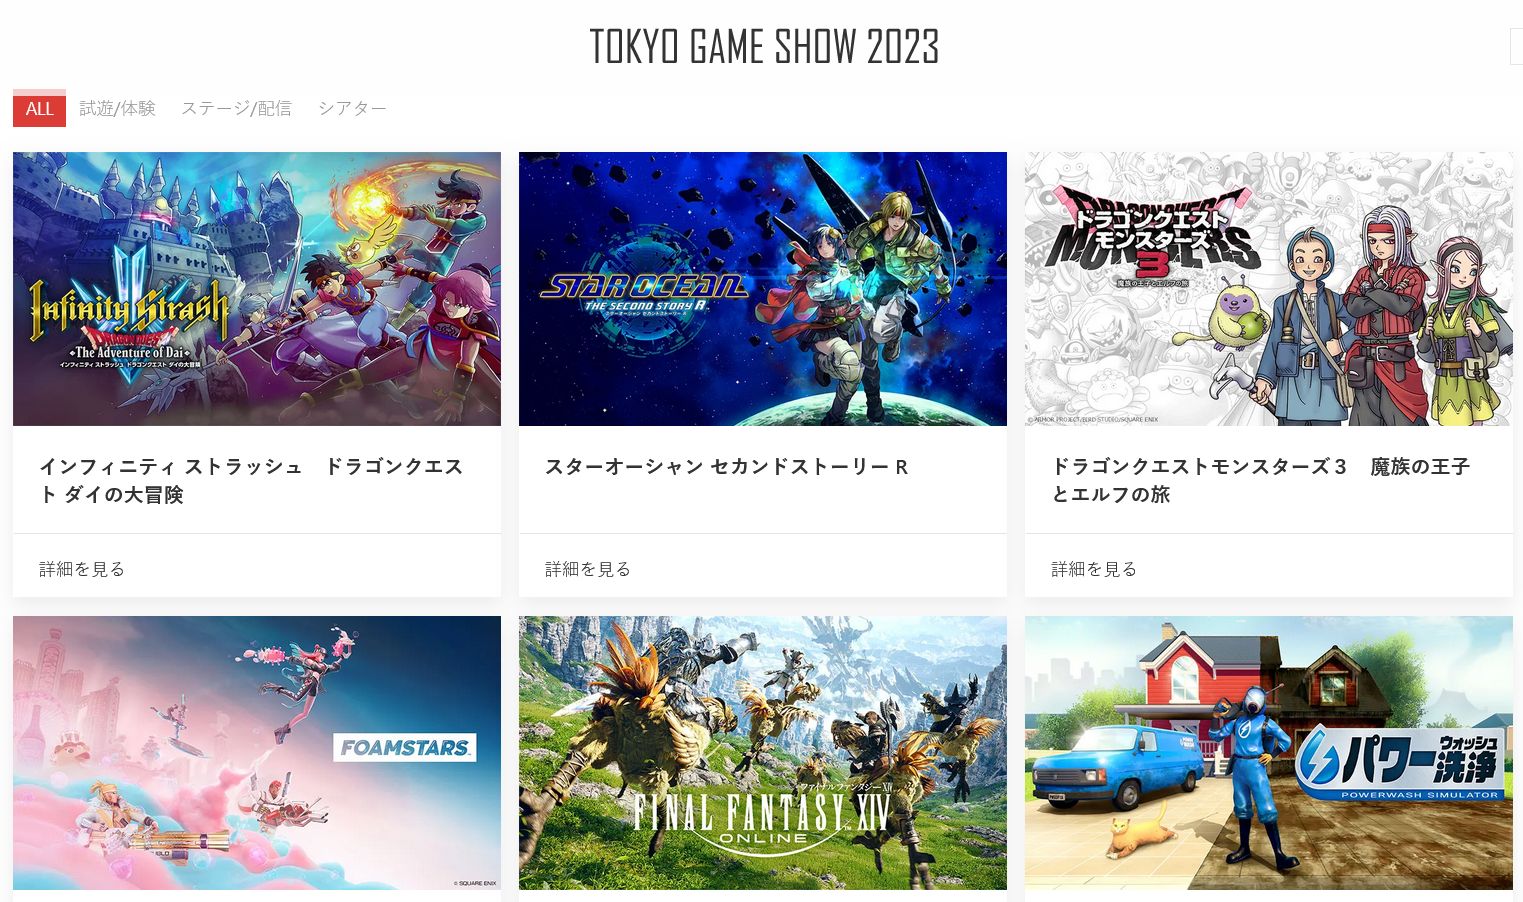 #Square Enix: Line-up und Livestreams zur Tokyo Game Show lassen auf Überraschung hoffen